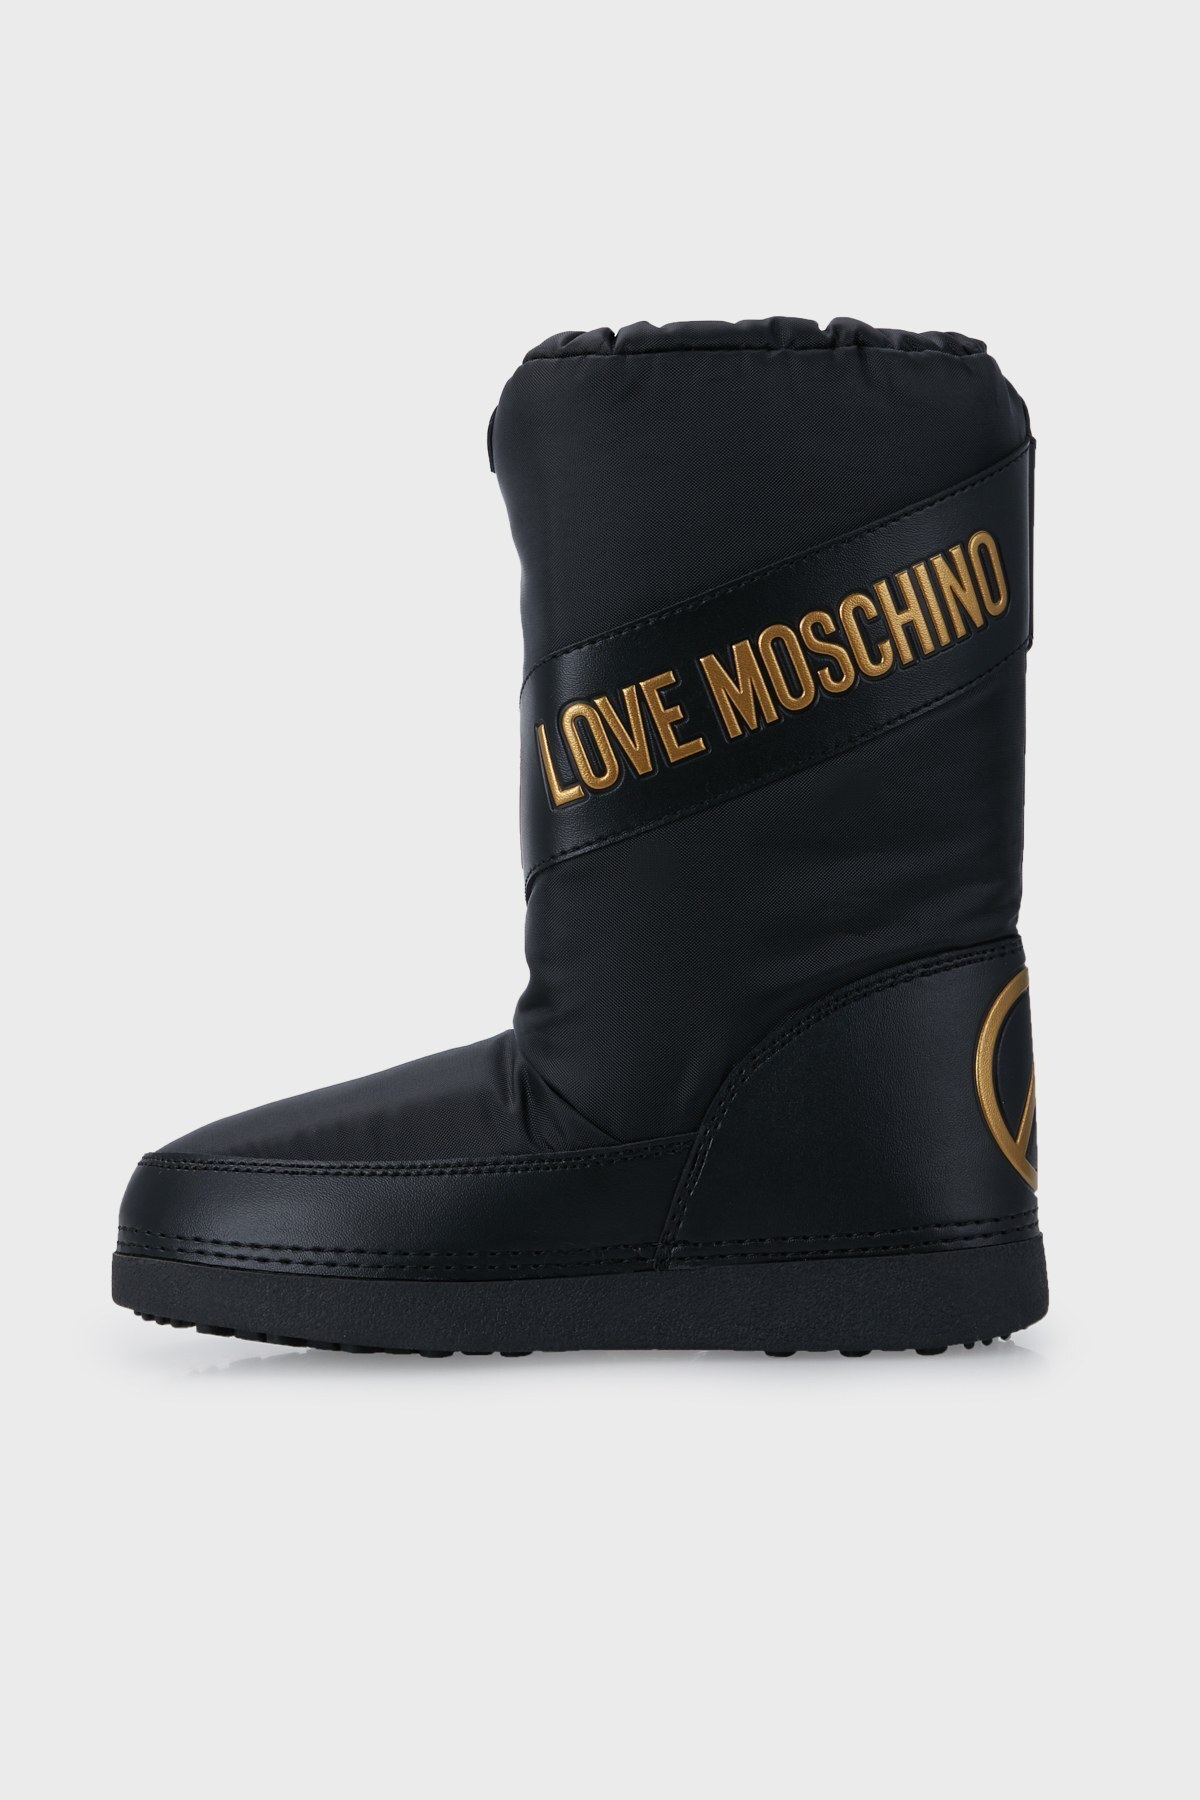 Love Moschino Logolu Bayan Kar Botu S JA24312G0DISR000 SİYAH